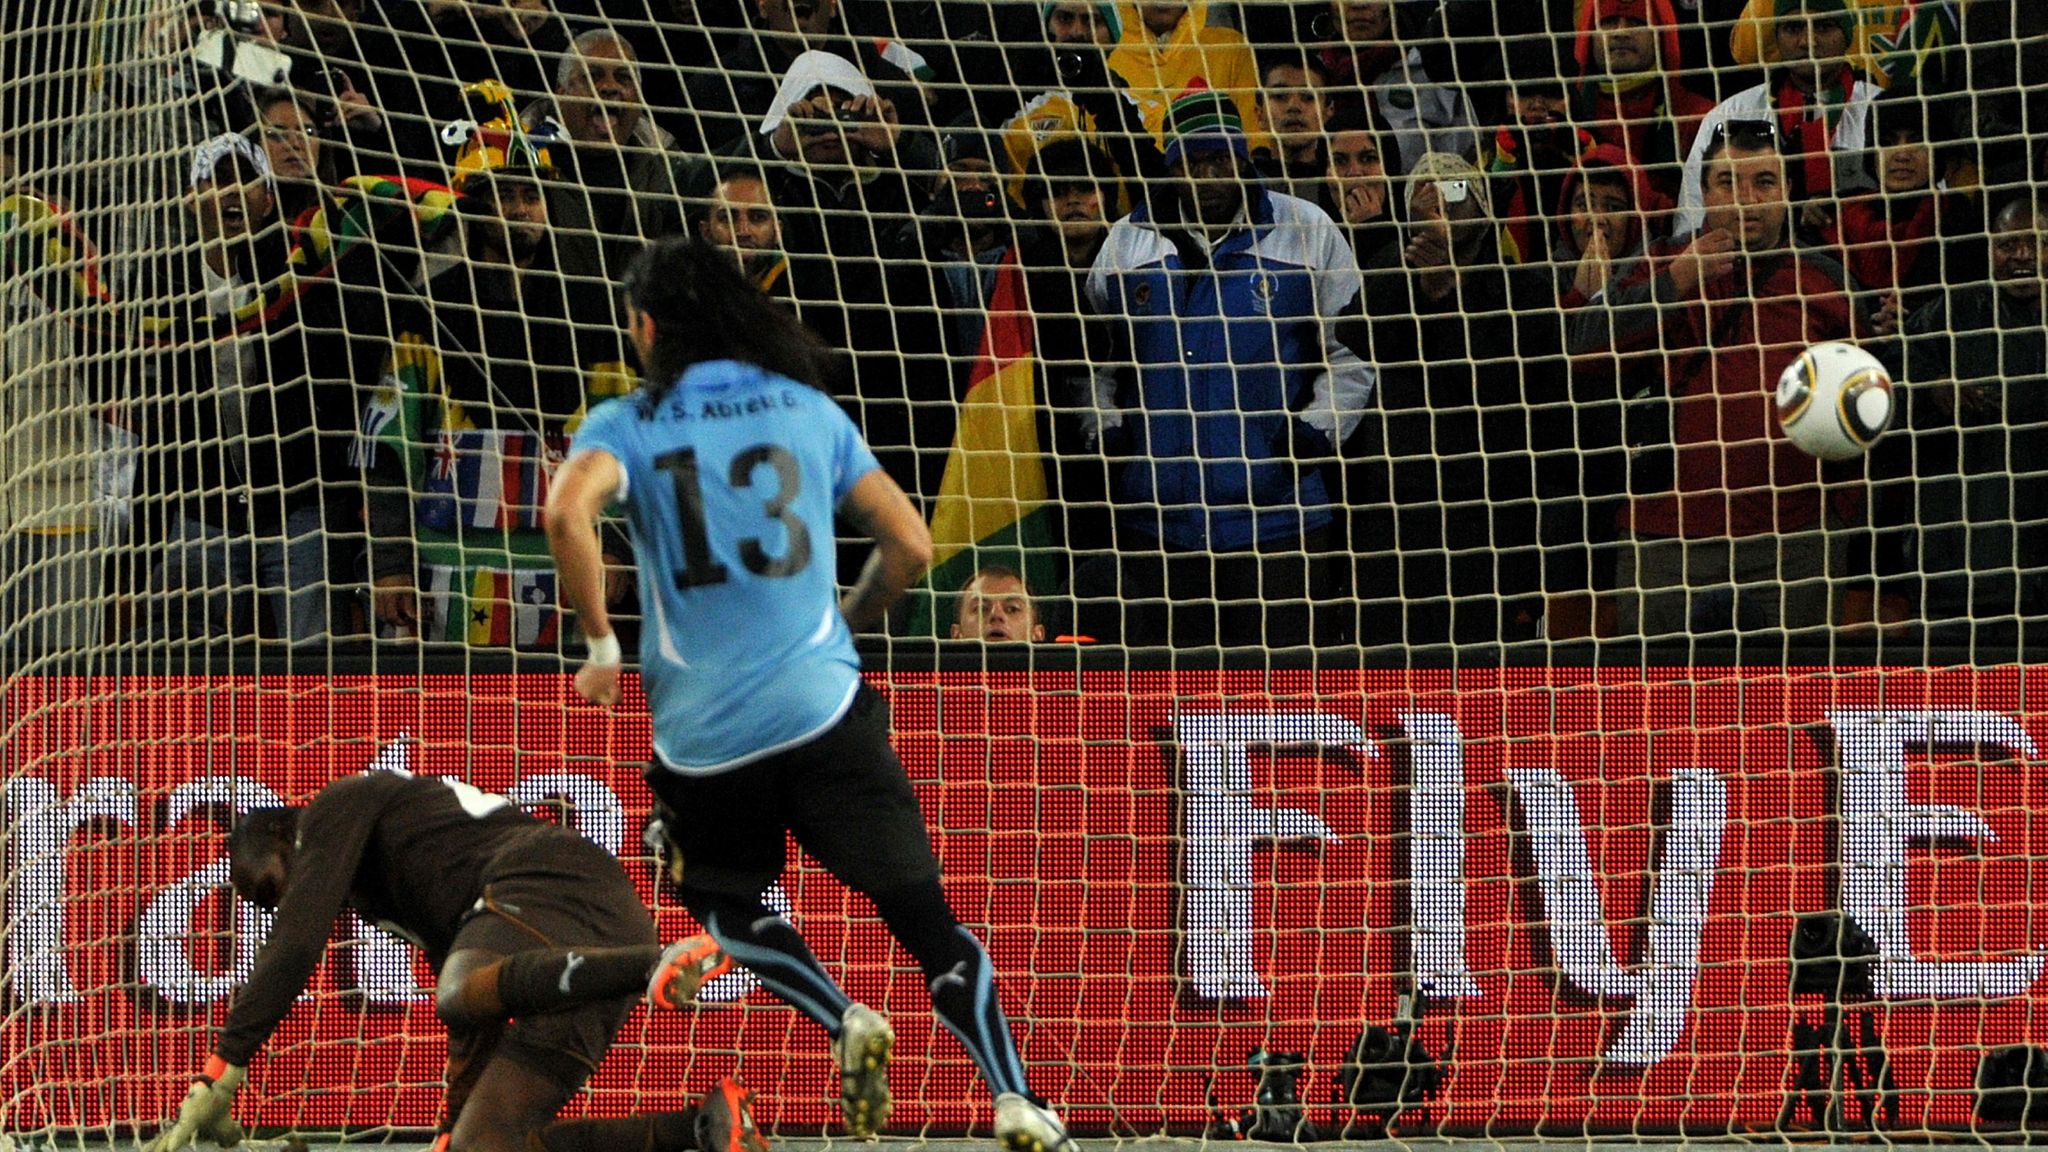 Ghana – Uruguay Mondial 2010 : Ce qu’a dit Abreu tout juste avant sa légendaire panenka